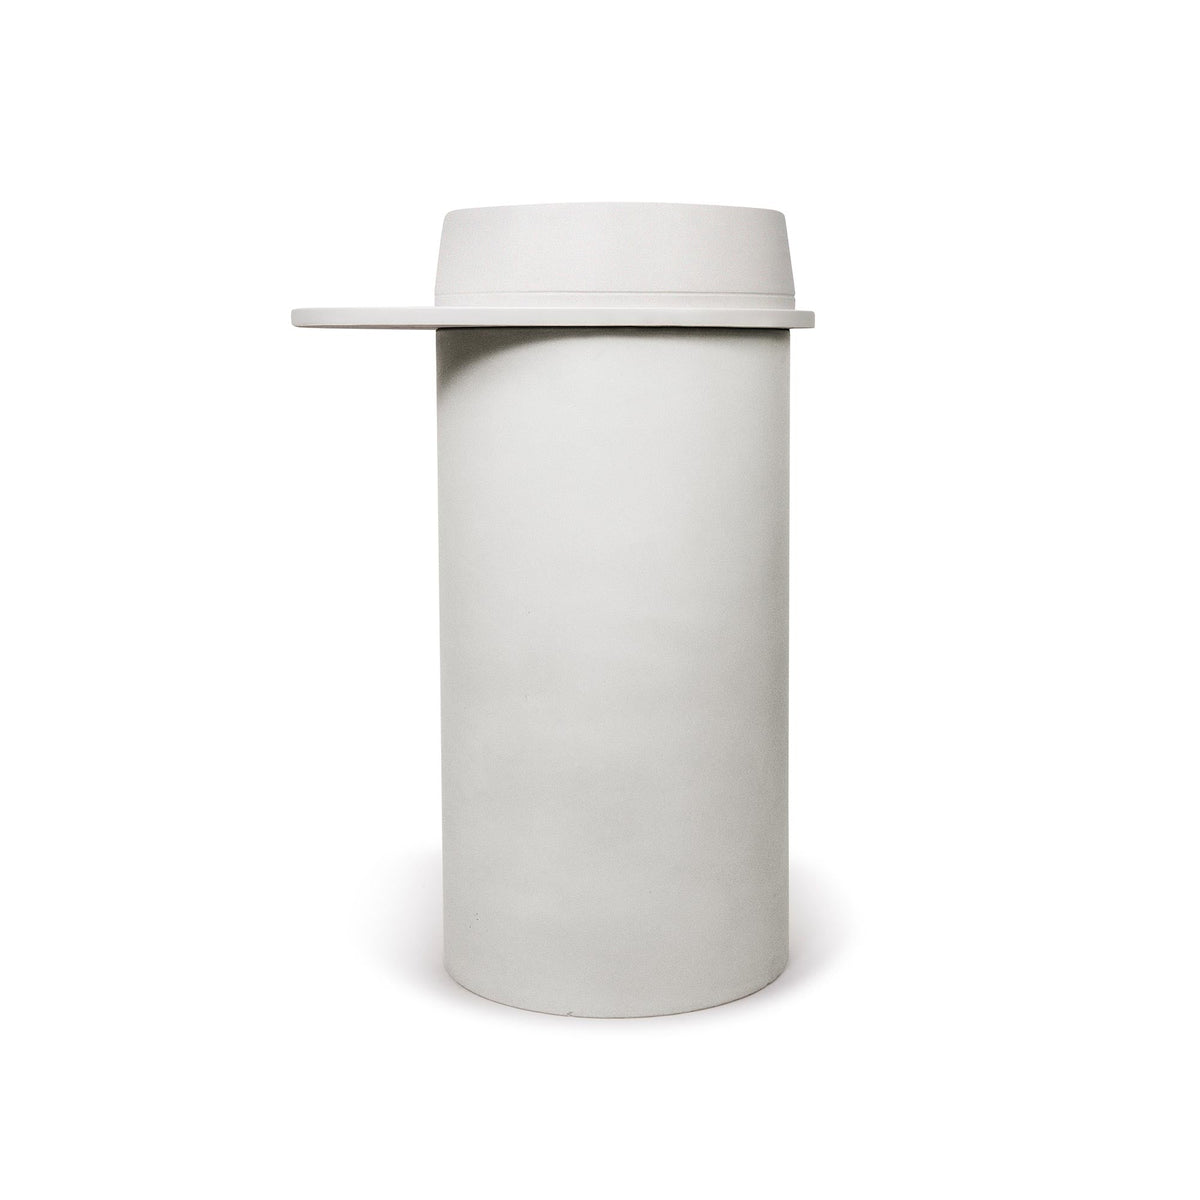 Cylinder with Tray - Funl Basin (Mid Tone Grey,Powder Blue)